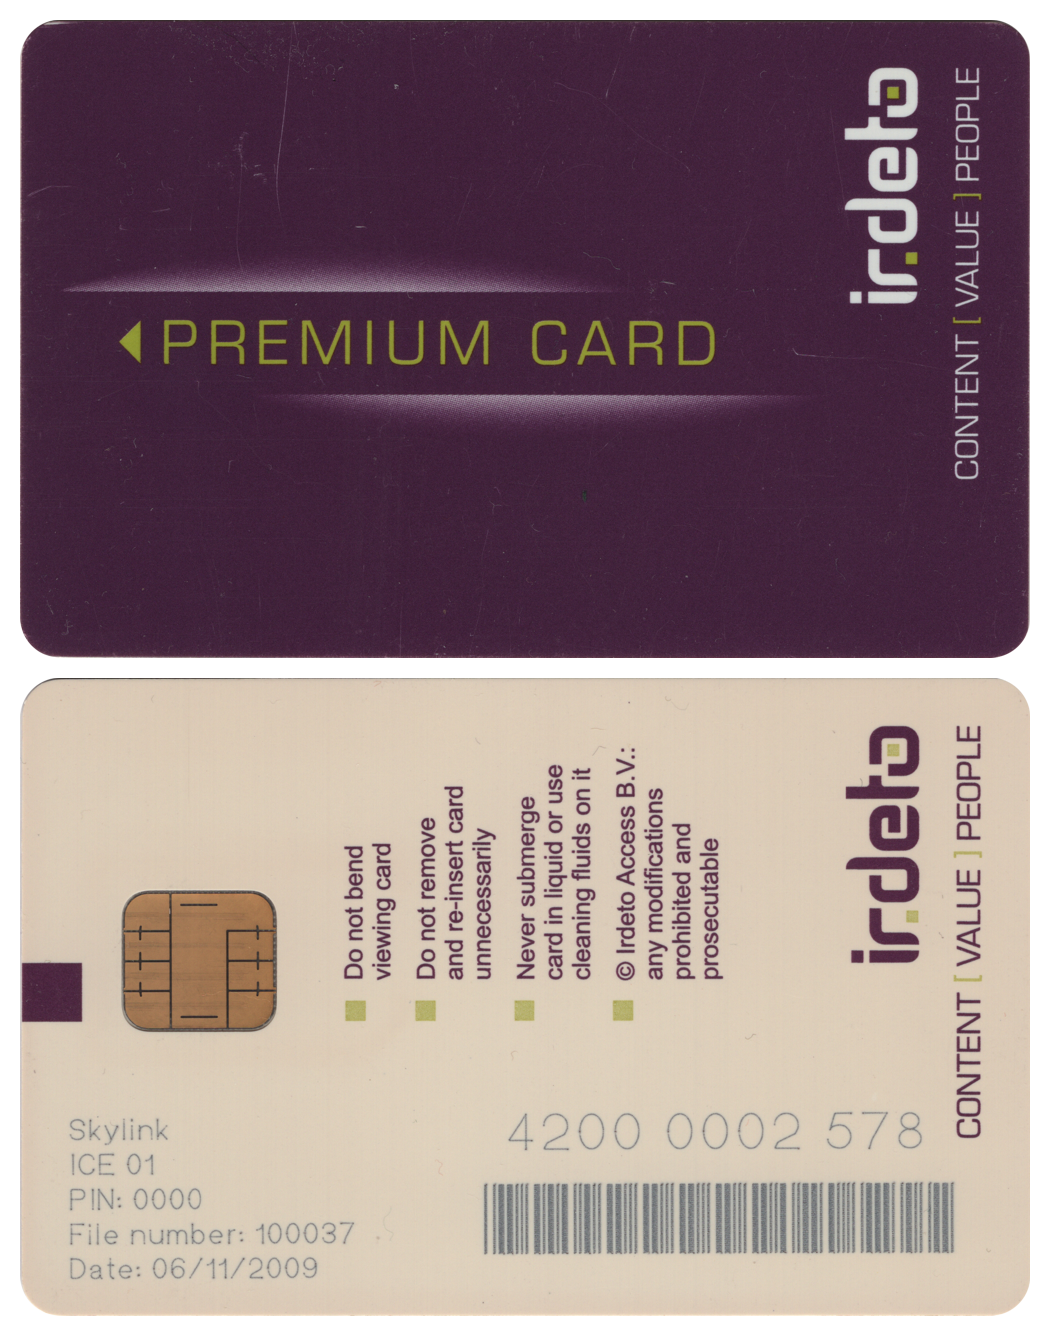 Premium card